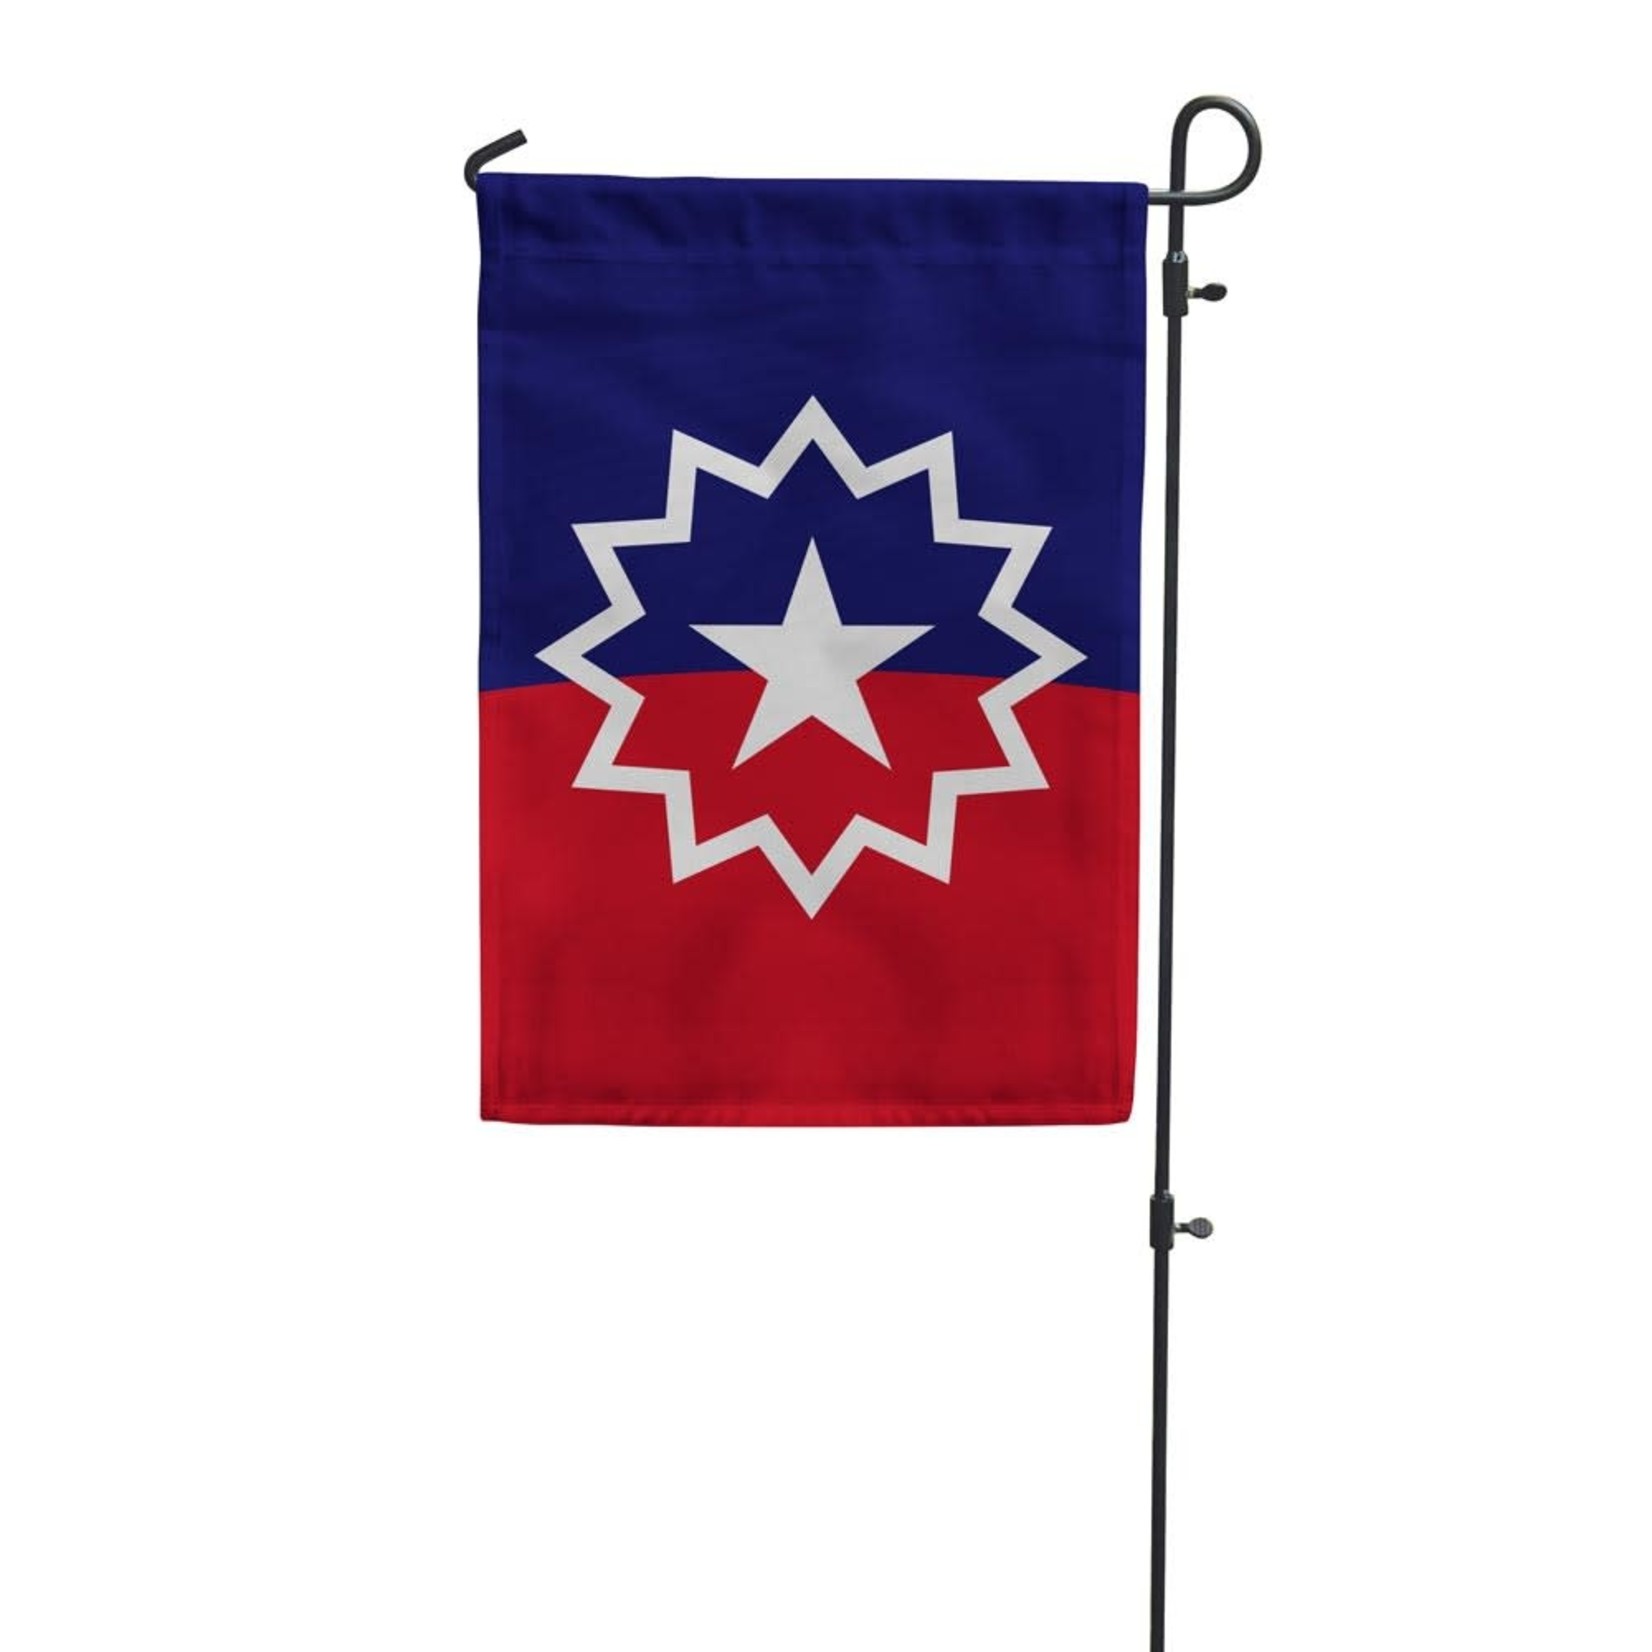 Flags for Good Garden Flag: Juneteenth